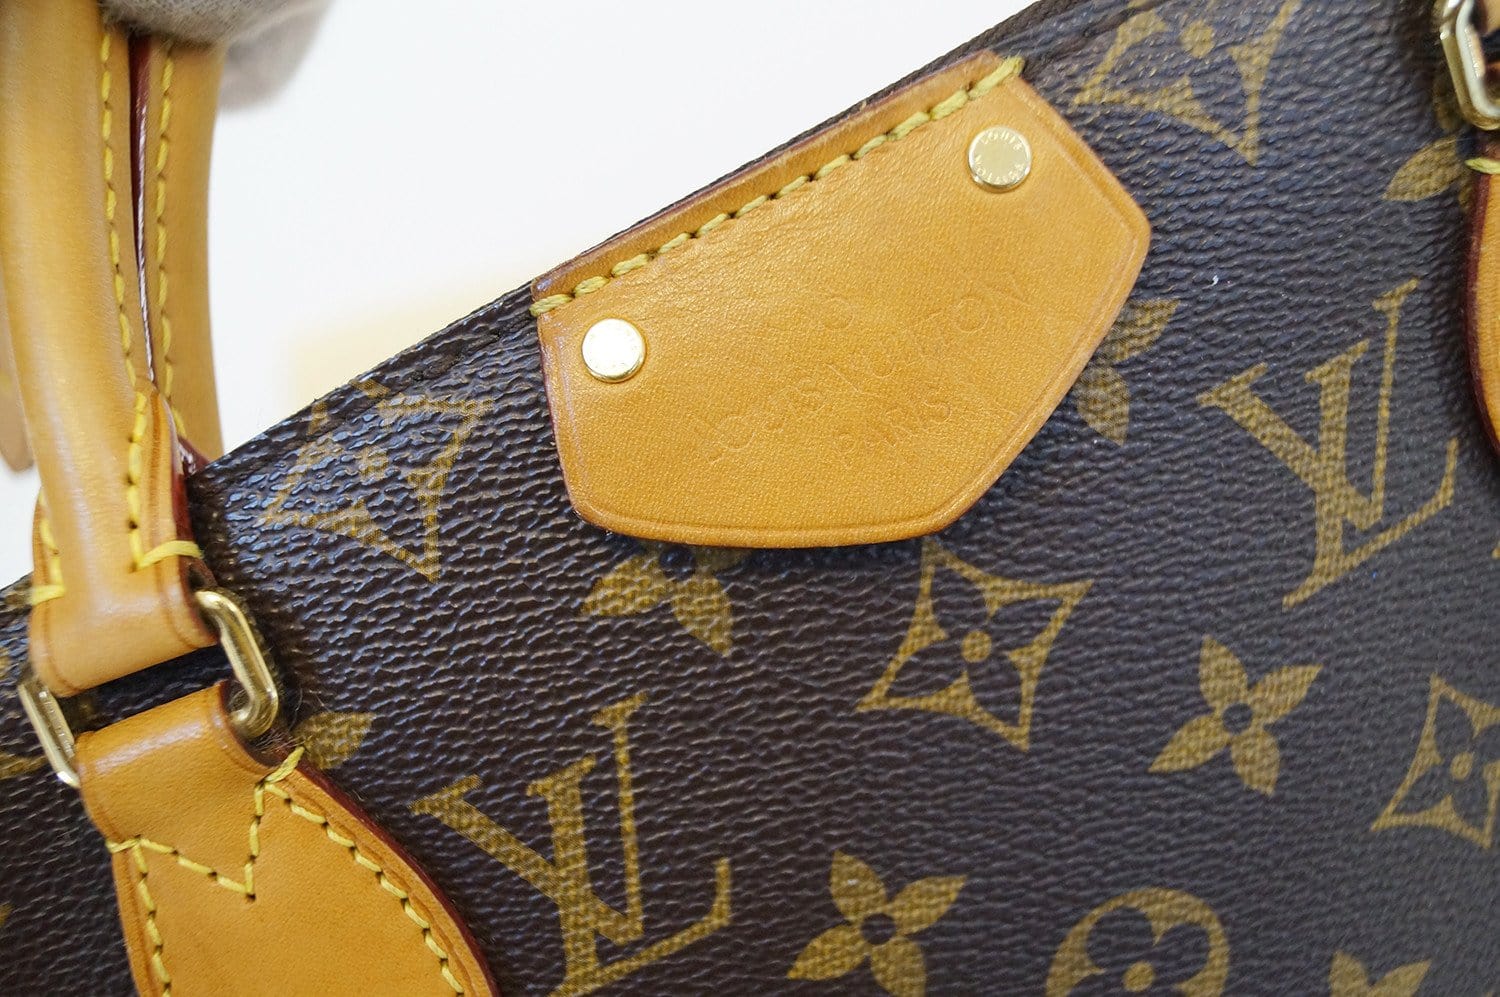 Turenne medium size handbag by Louis Vuitton